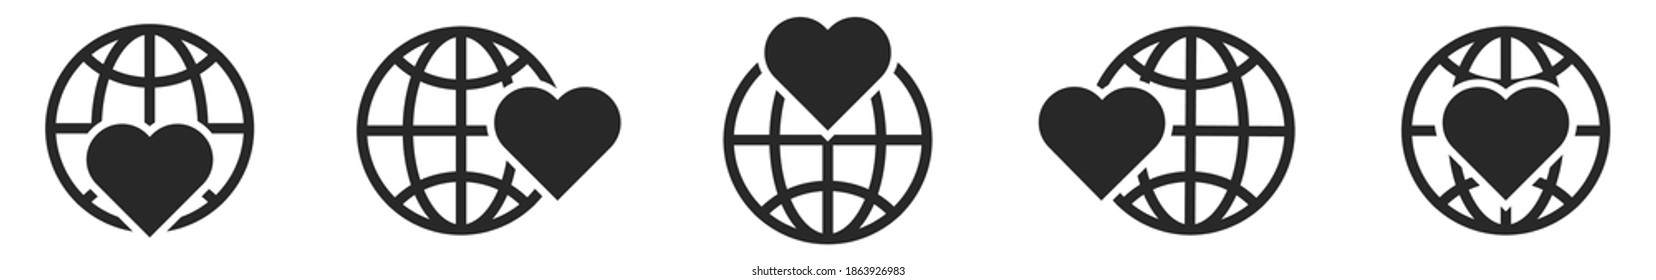 地球 ハート のイラスト素材 画像 ベクター画像 Shutterstock